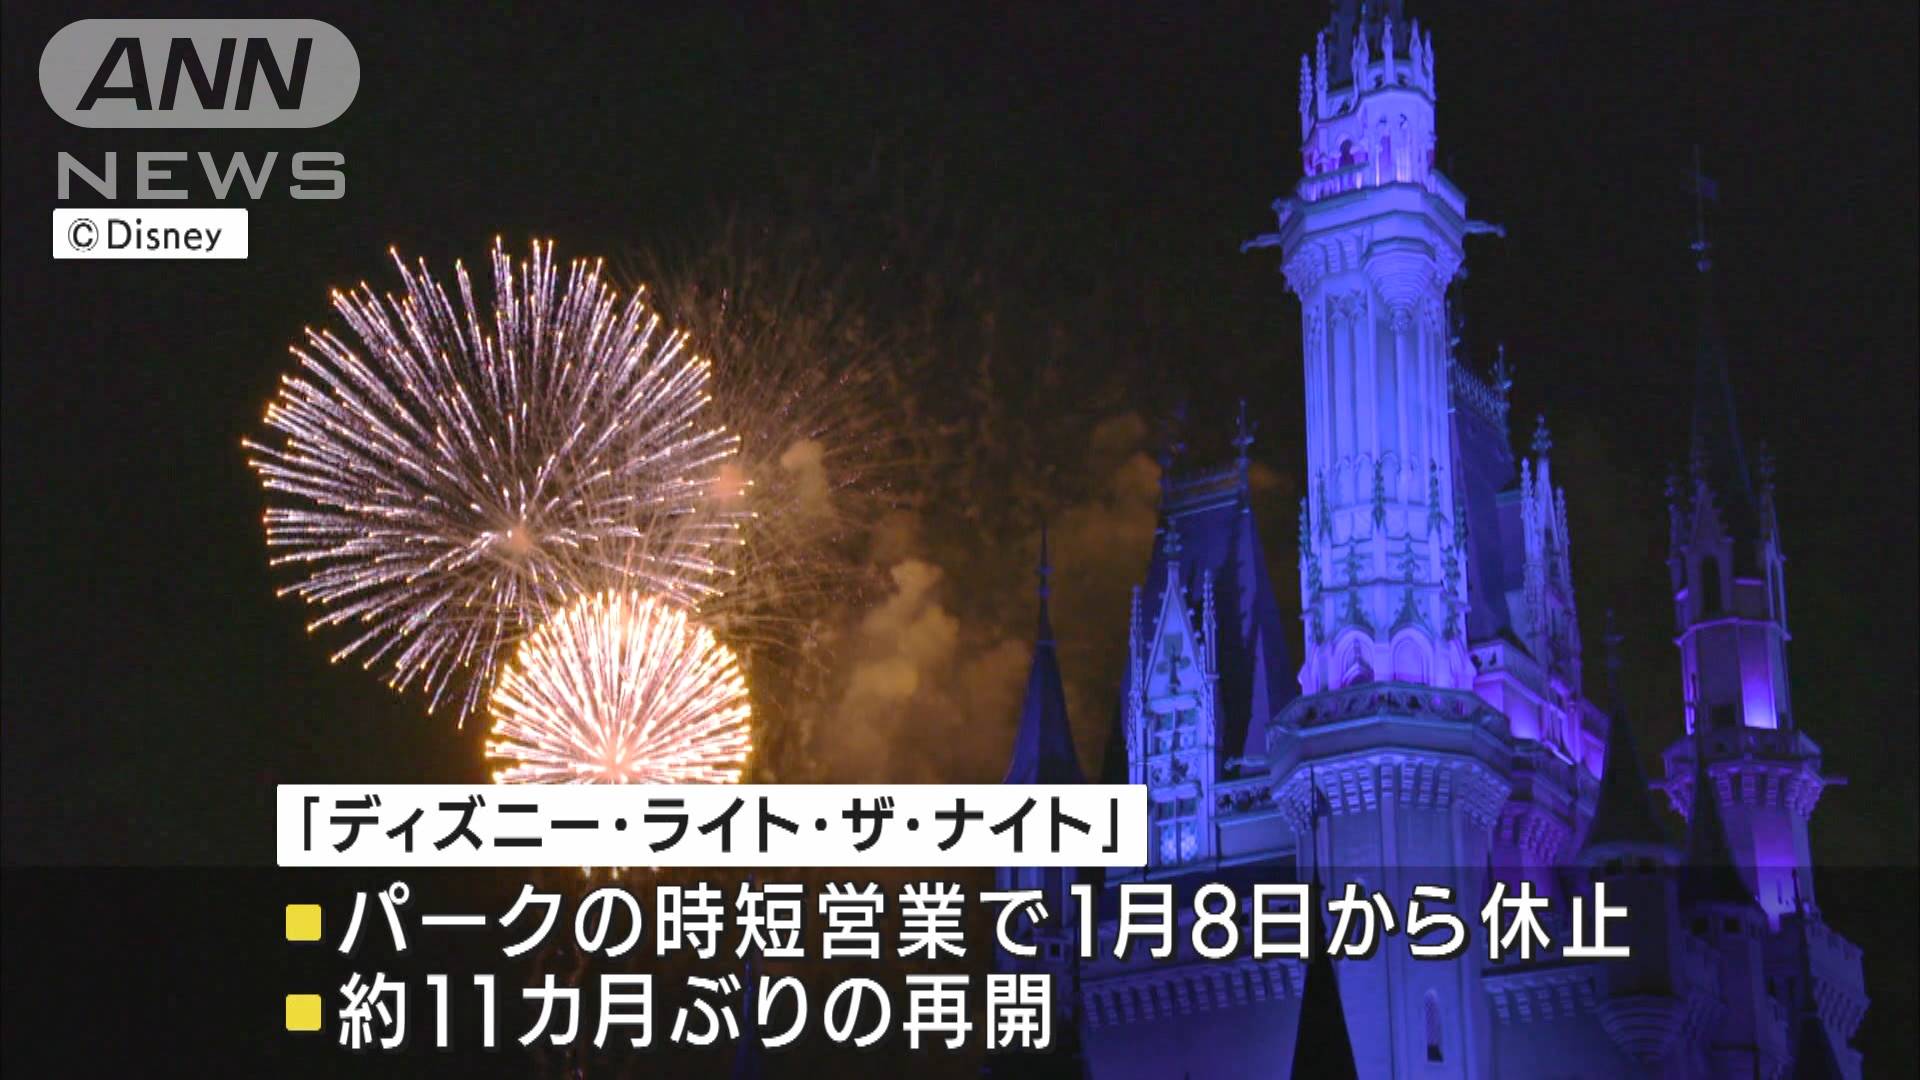 東京ディズニー 12月1日から花火再開 11カ月ぶり テレ朝news テレビ朝日のニュースサイト